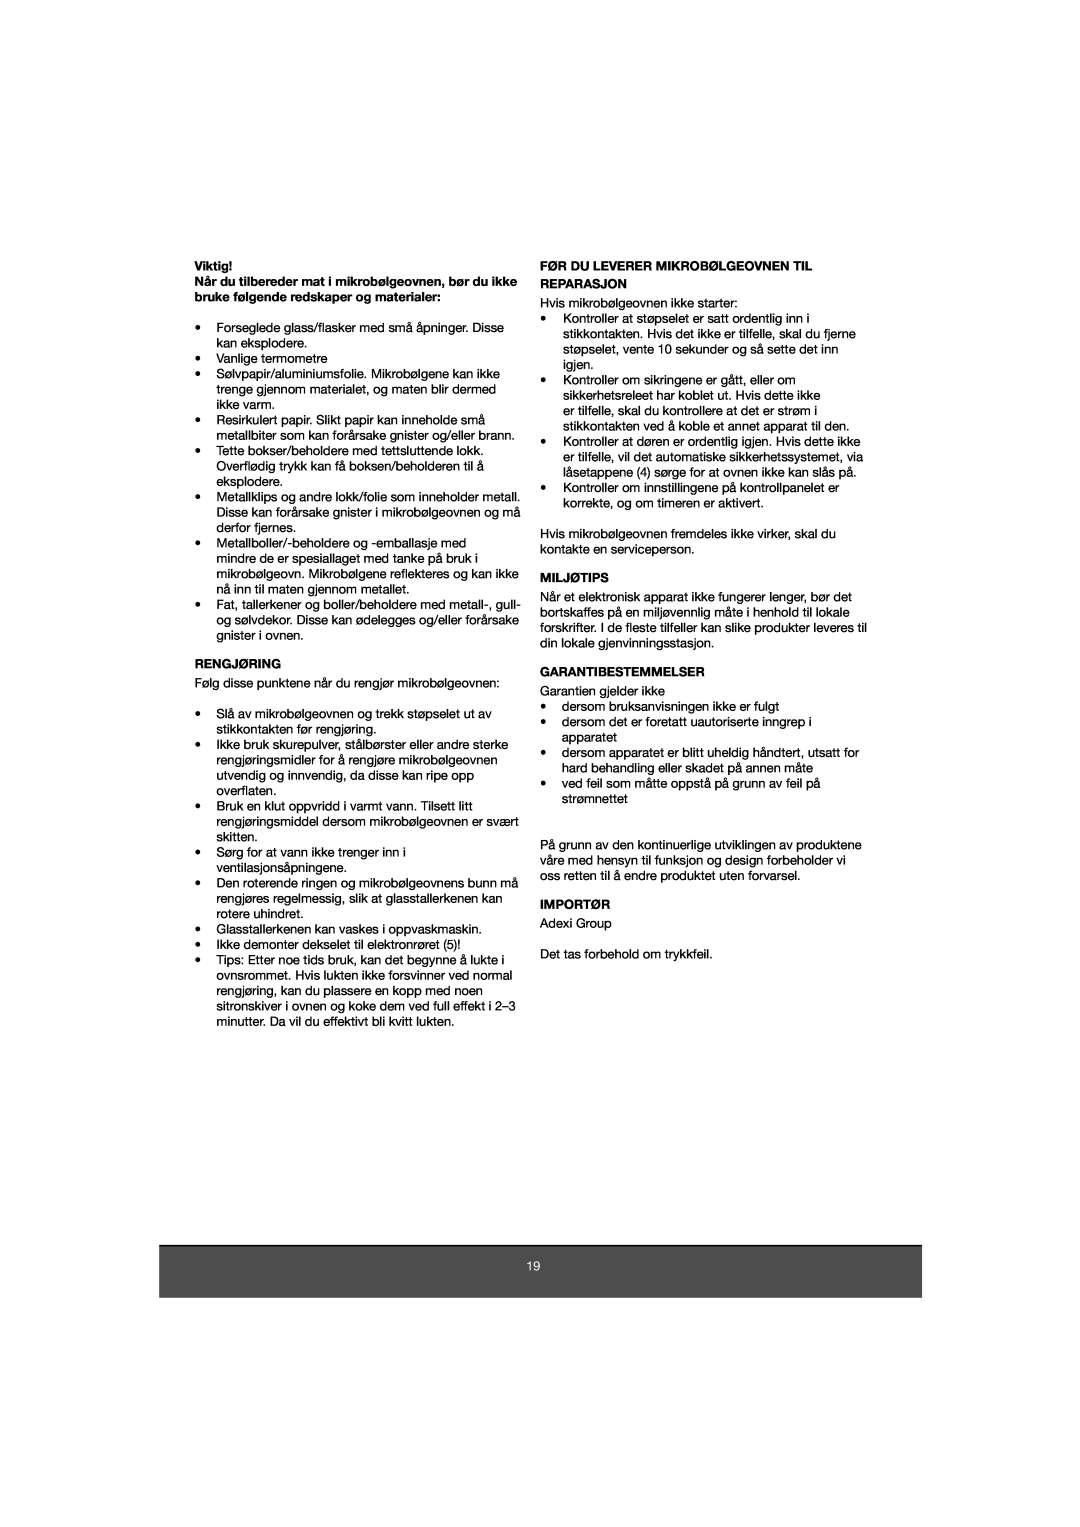 Melissa 653-081 manual Viktig, Rengjøring, Før Du Leverer Mikrobølgeovnen Til Reparasjon, Miljøtips, Garantibestemmelser 